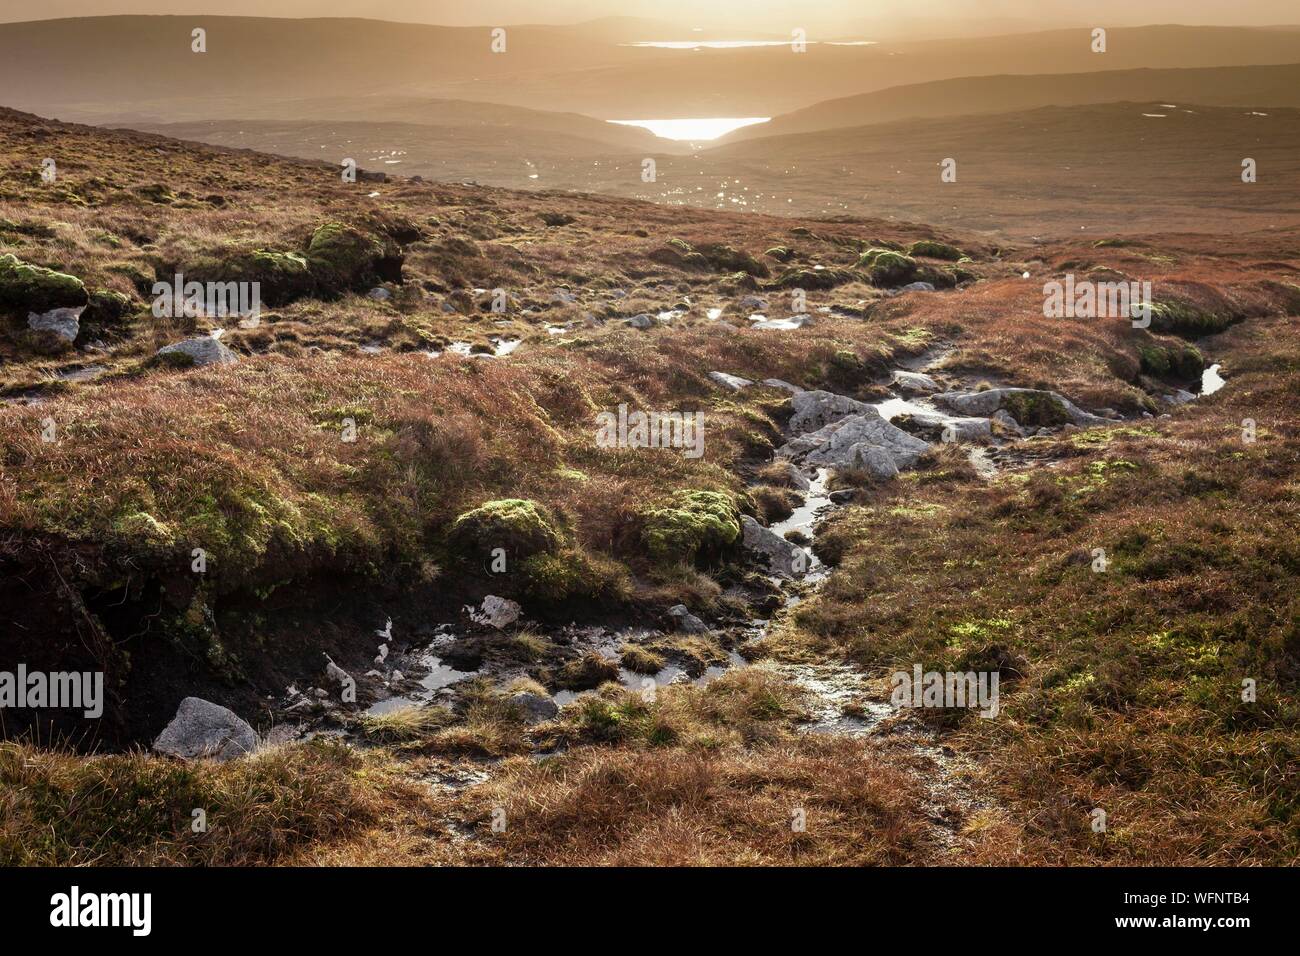 Reino Unido, Escocia, Islas Shetland, Continental, Ronas Hill, Moor, piedra, turba y bajo la hierba en el punto más alto del archipiélago Shetland, elevándose a 450 metros sobre el nivel del mar. Foto de stock